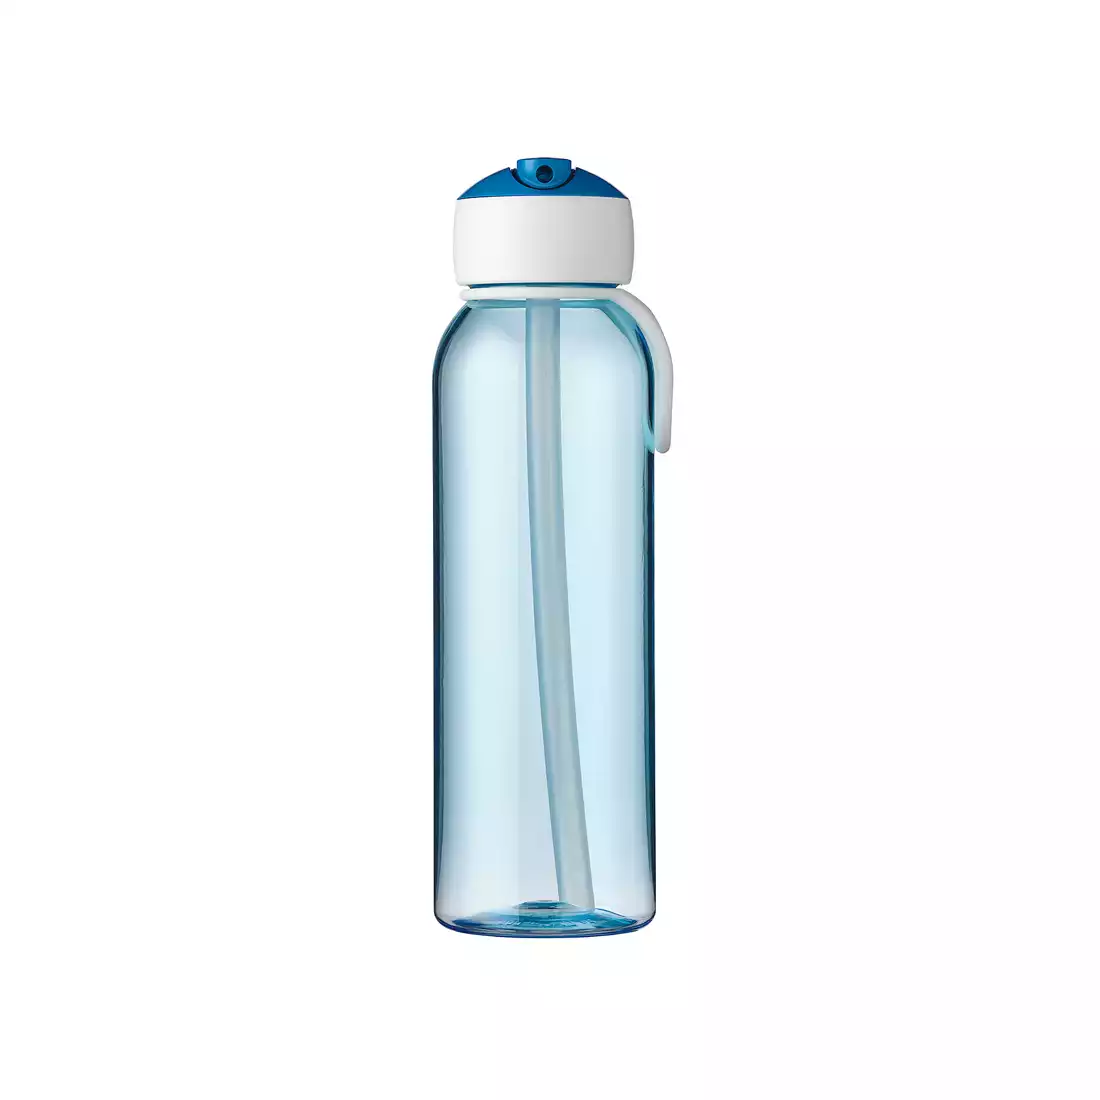 MEPAL FLIP-UP CAMPUS 500 ml wasserflasche, blau